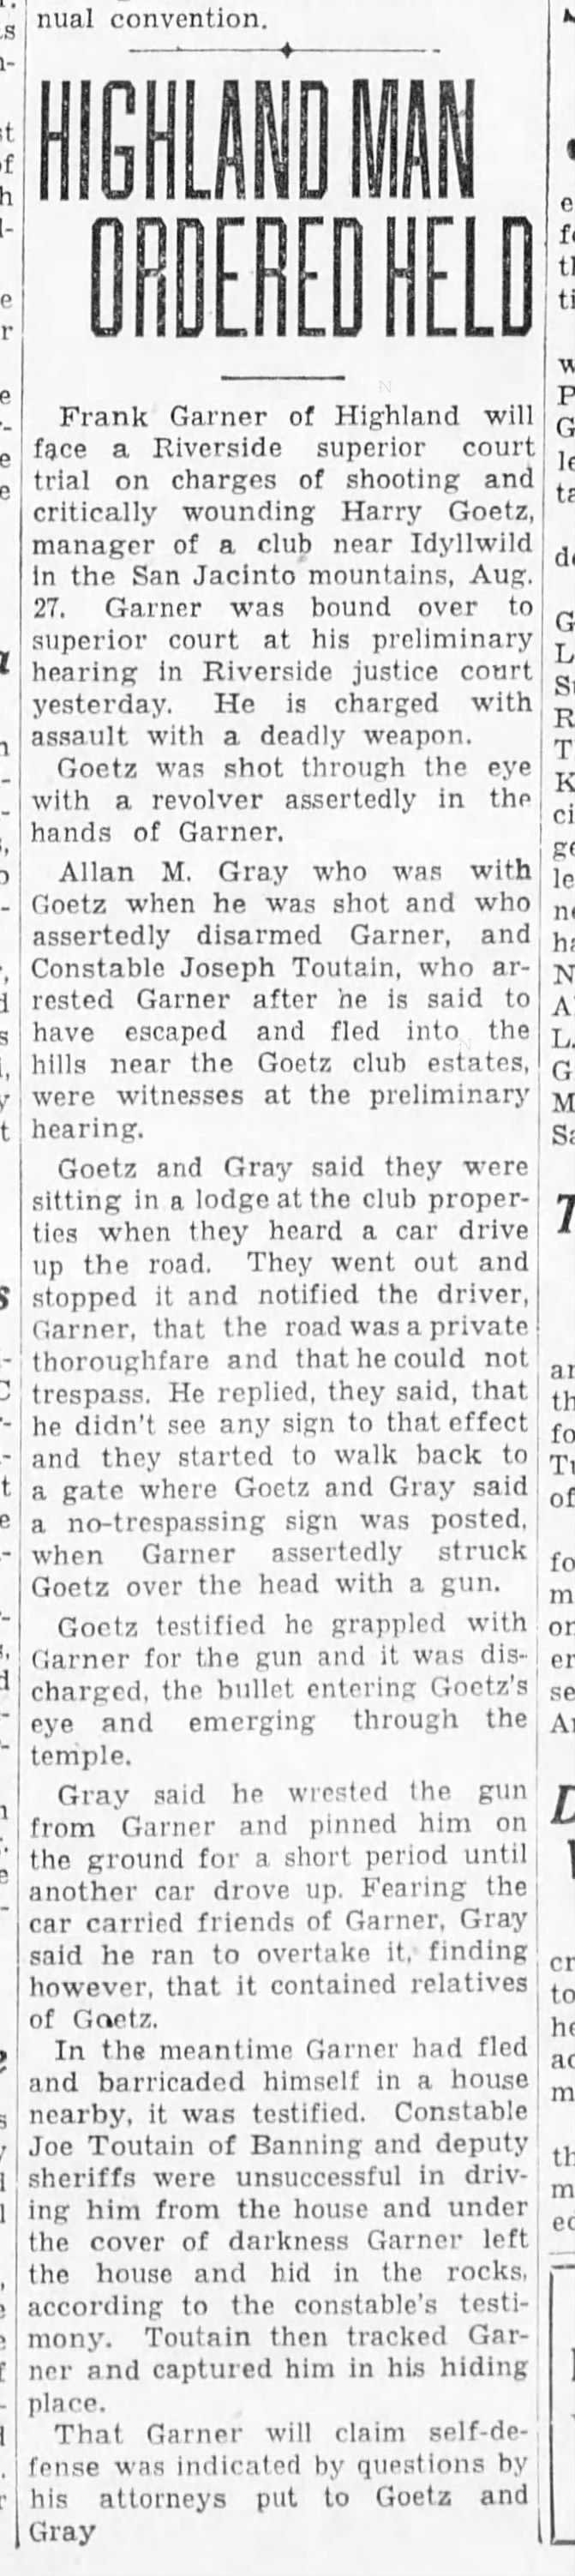 Man ordered held in Goetz shooting - San Berdo Sun 10-07-1934